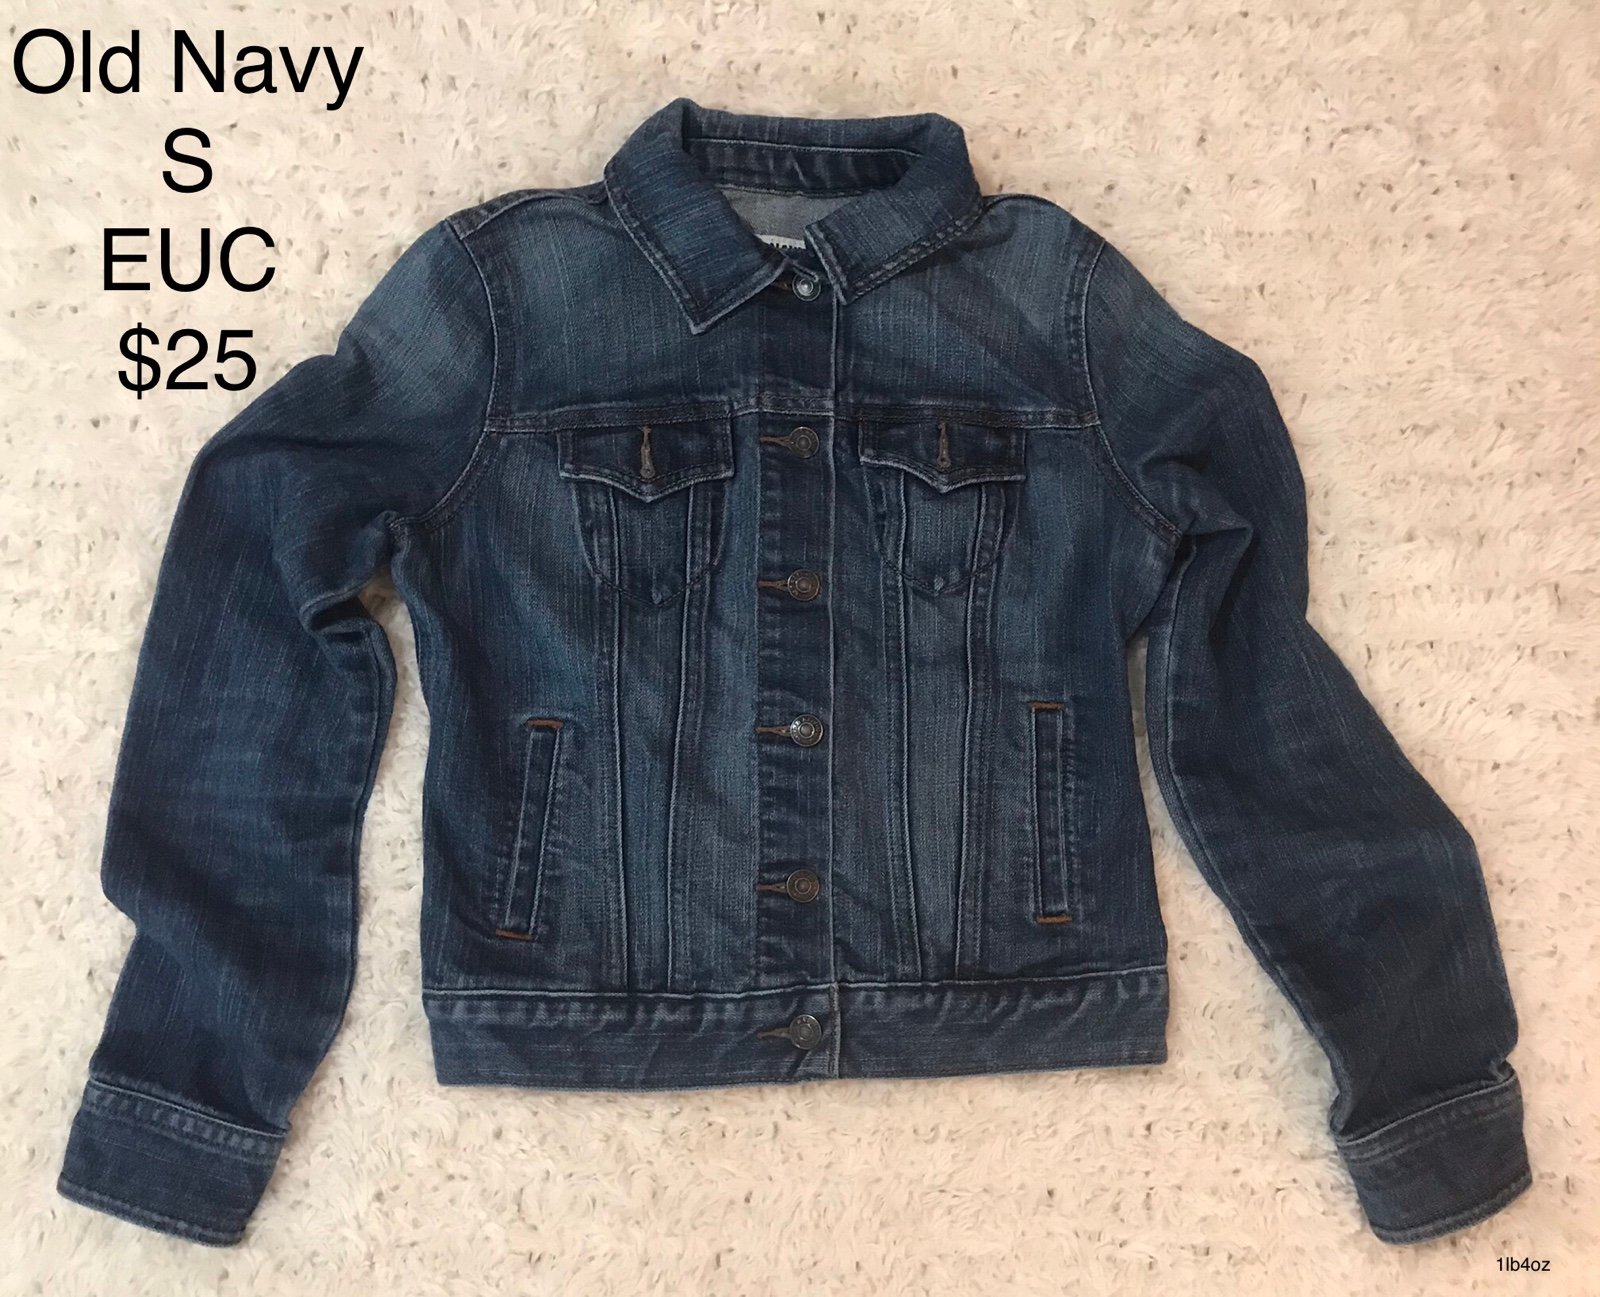 Custom Small Women’s Old Navy Jean Jacket - Dark Wash Denim Button Down Coat MeYYEQPvJ Everyday Low Prices